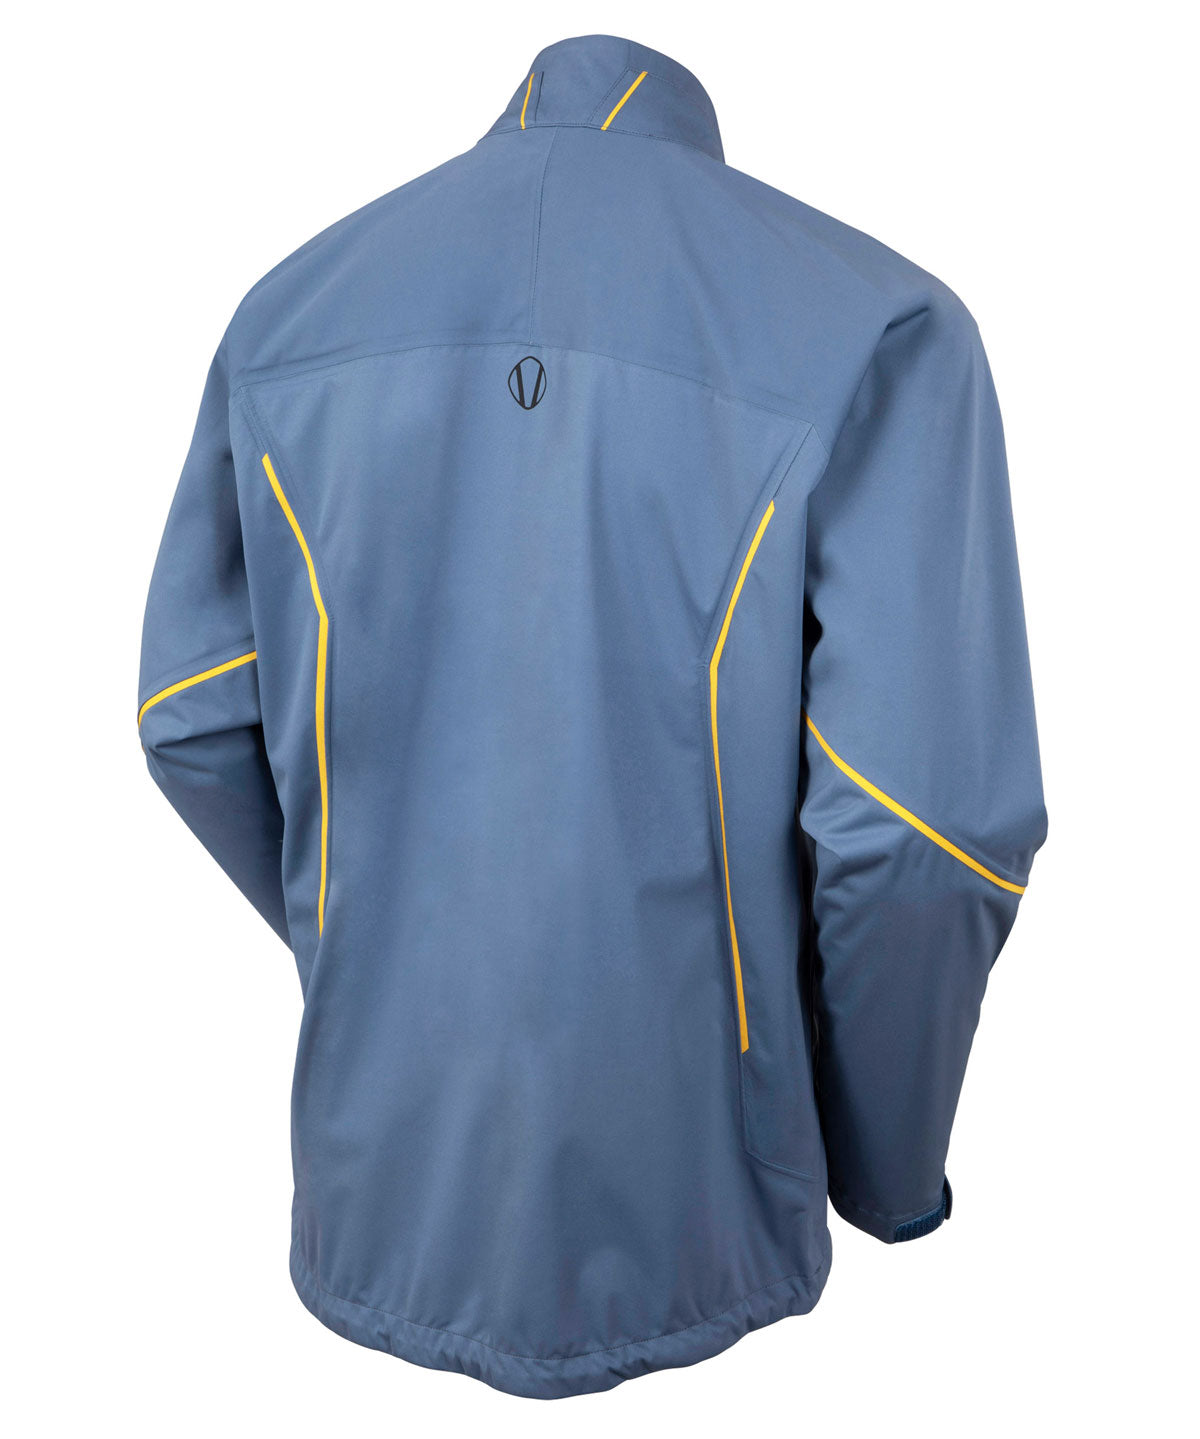 Men's Jay Zephal FlexTech Waterproof Ultra-Stretch Jacket - Sunice